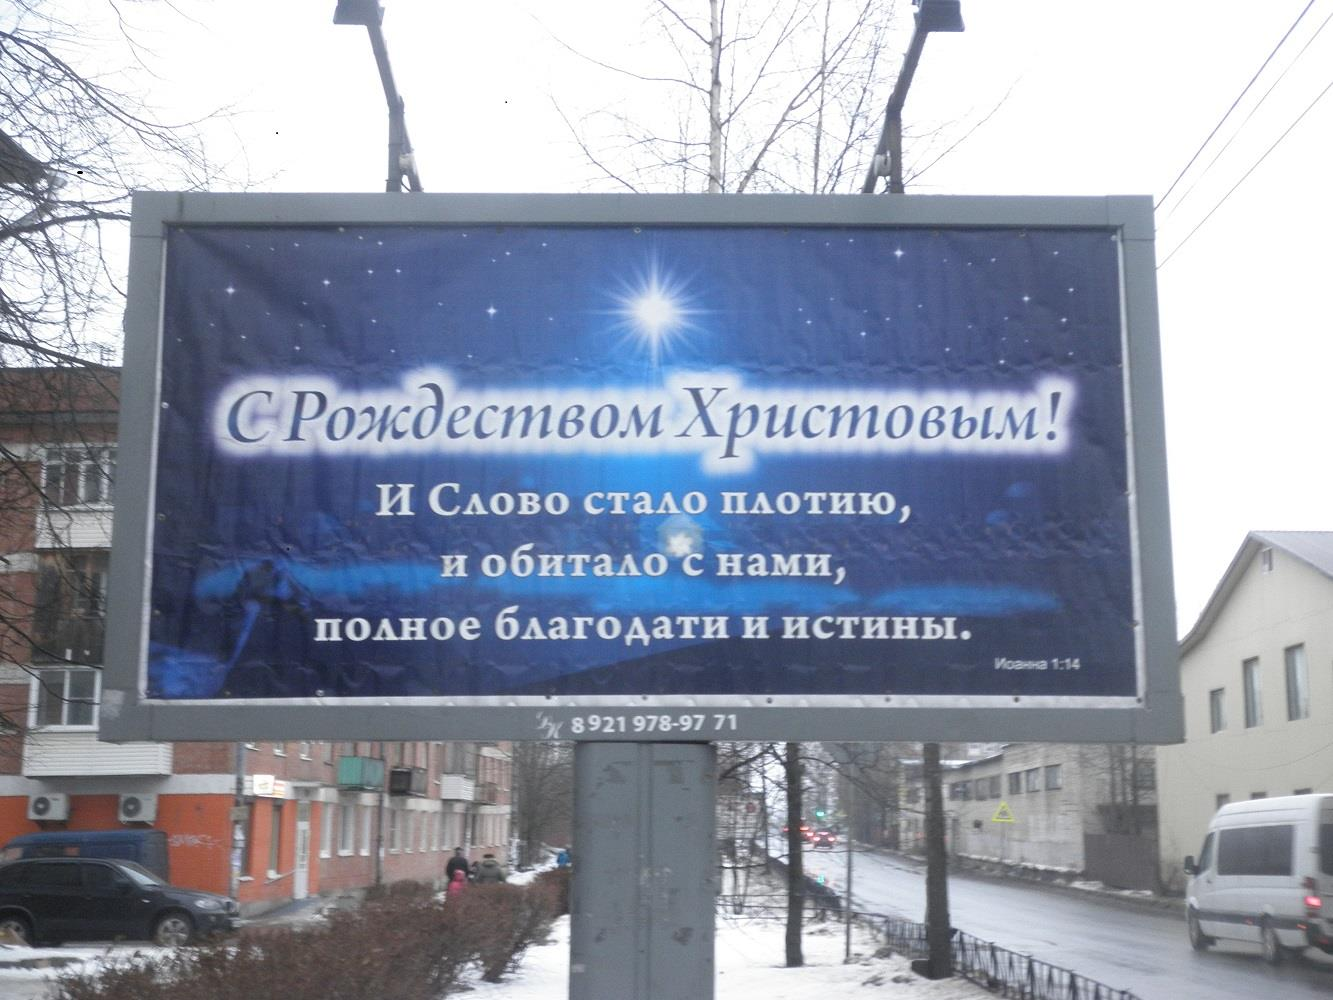 Hyvää Vapahtajamme syntymäjuhlaa ja Siunattua Armon vuotta 2017! Hatsinan ja Puškinin välissä on Kommunarin kaupunki, jonka pääkadulla on tällainen ulkomainos: Kristuksen syntymäjuhlaa!